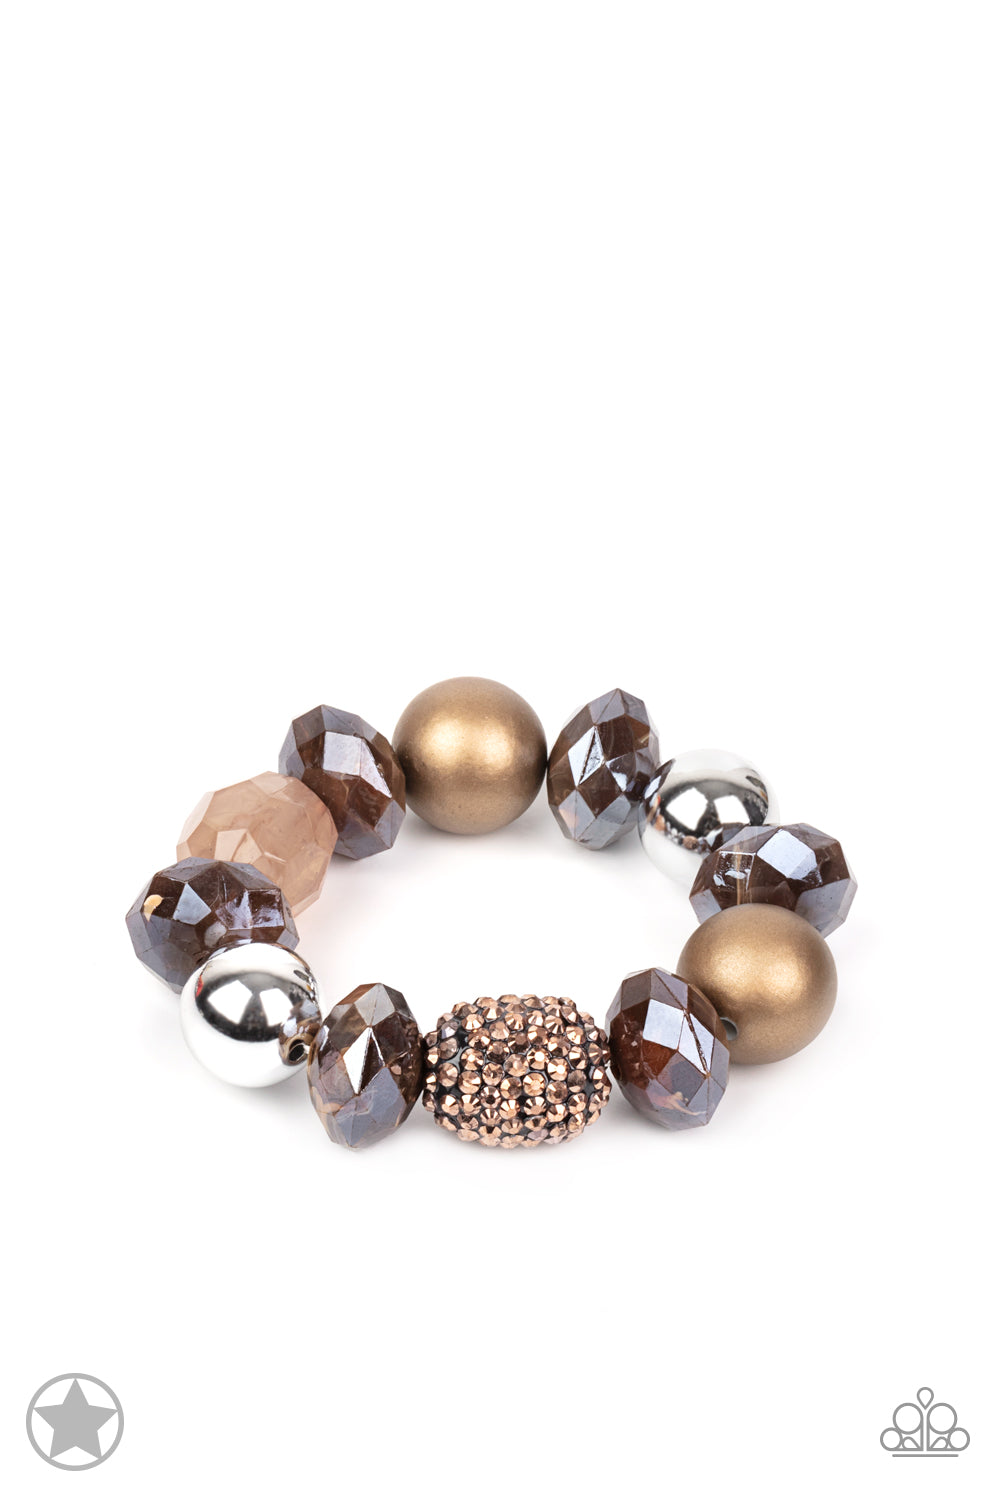 All Cozied Up - Copper Bracelet freeshipping - JewLz4u Gemstone Gallery